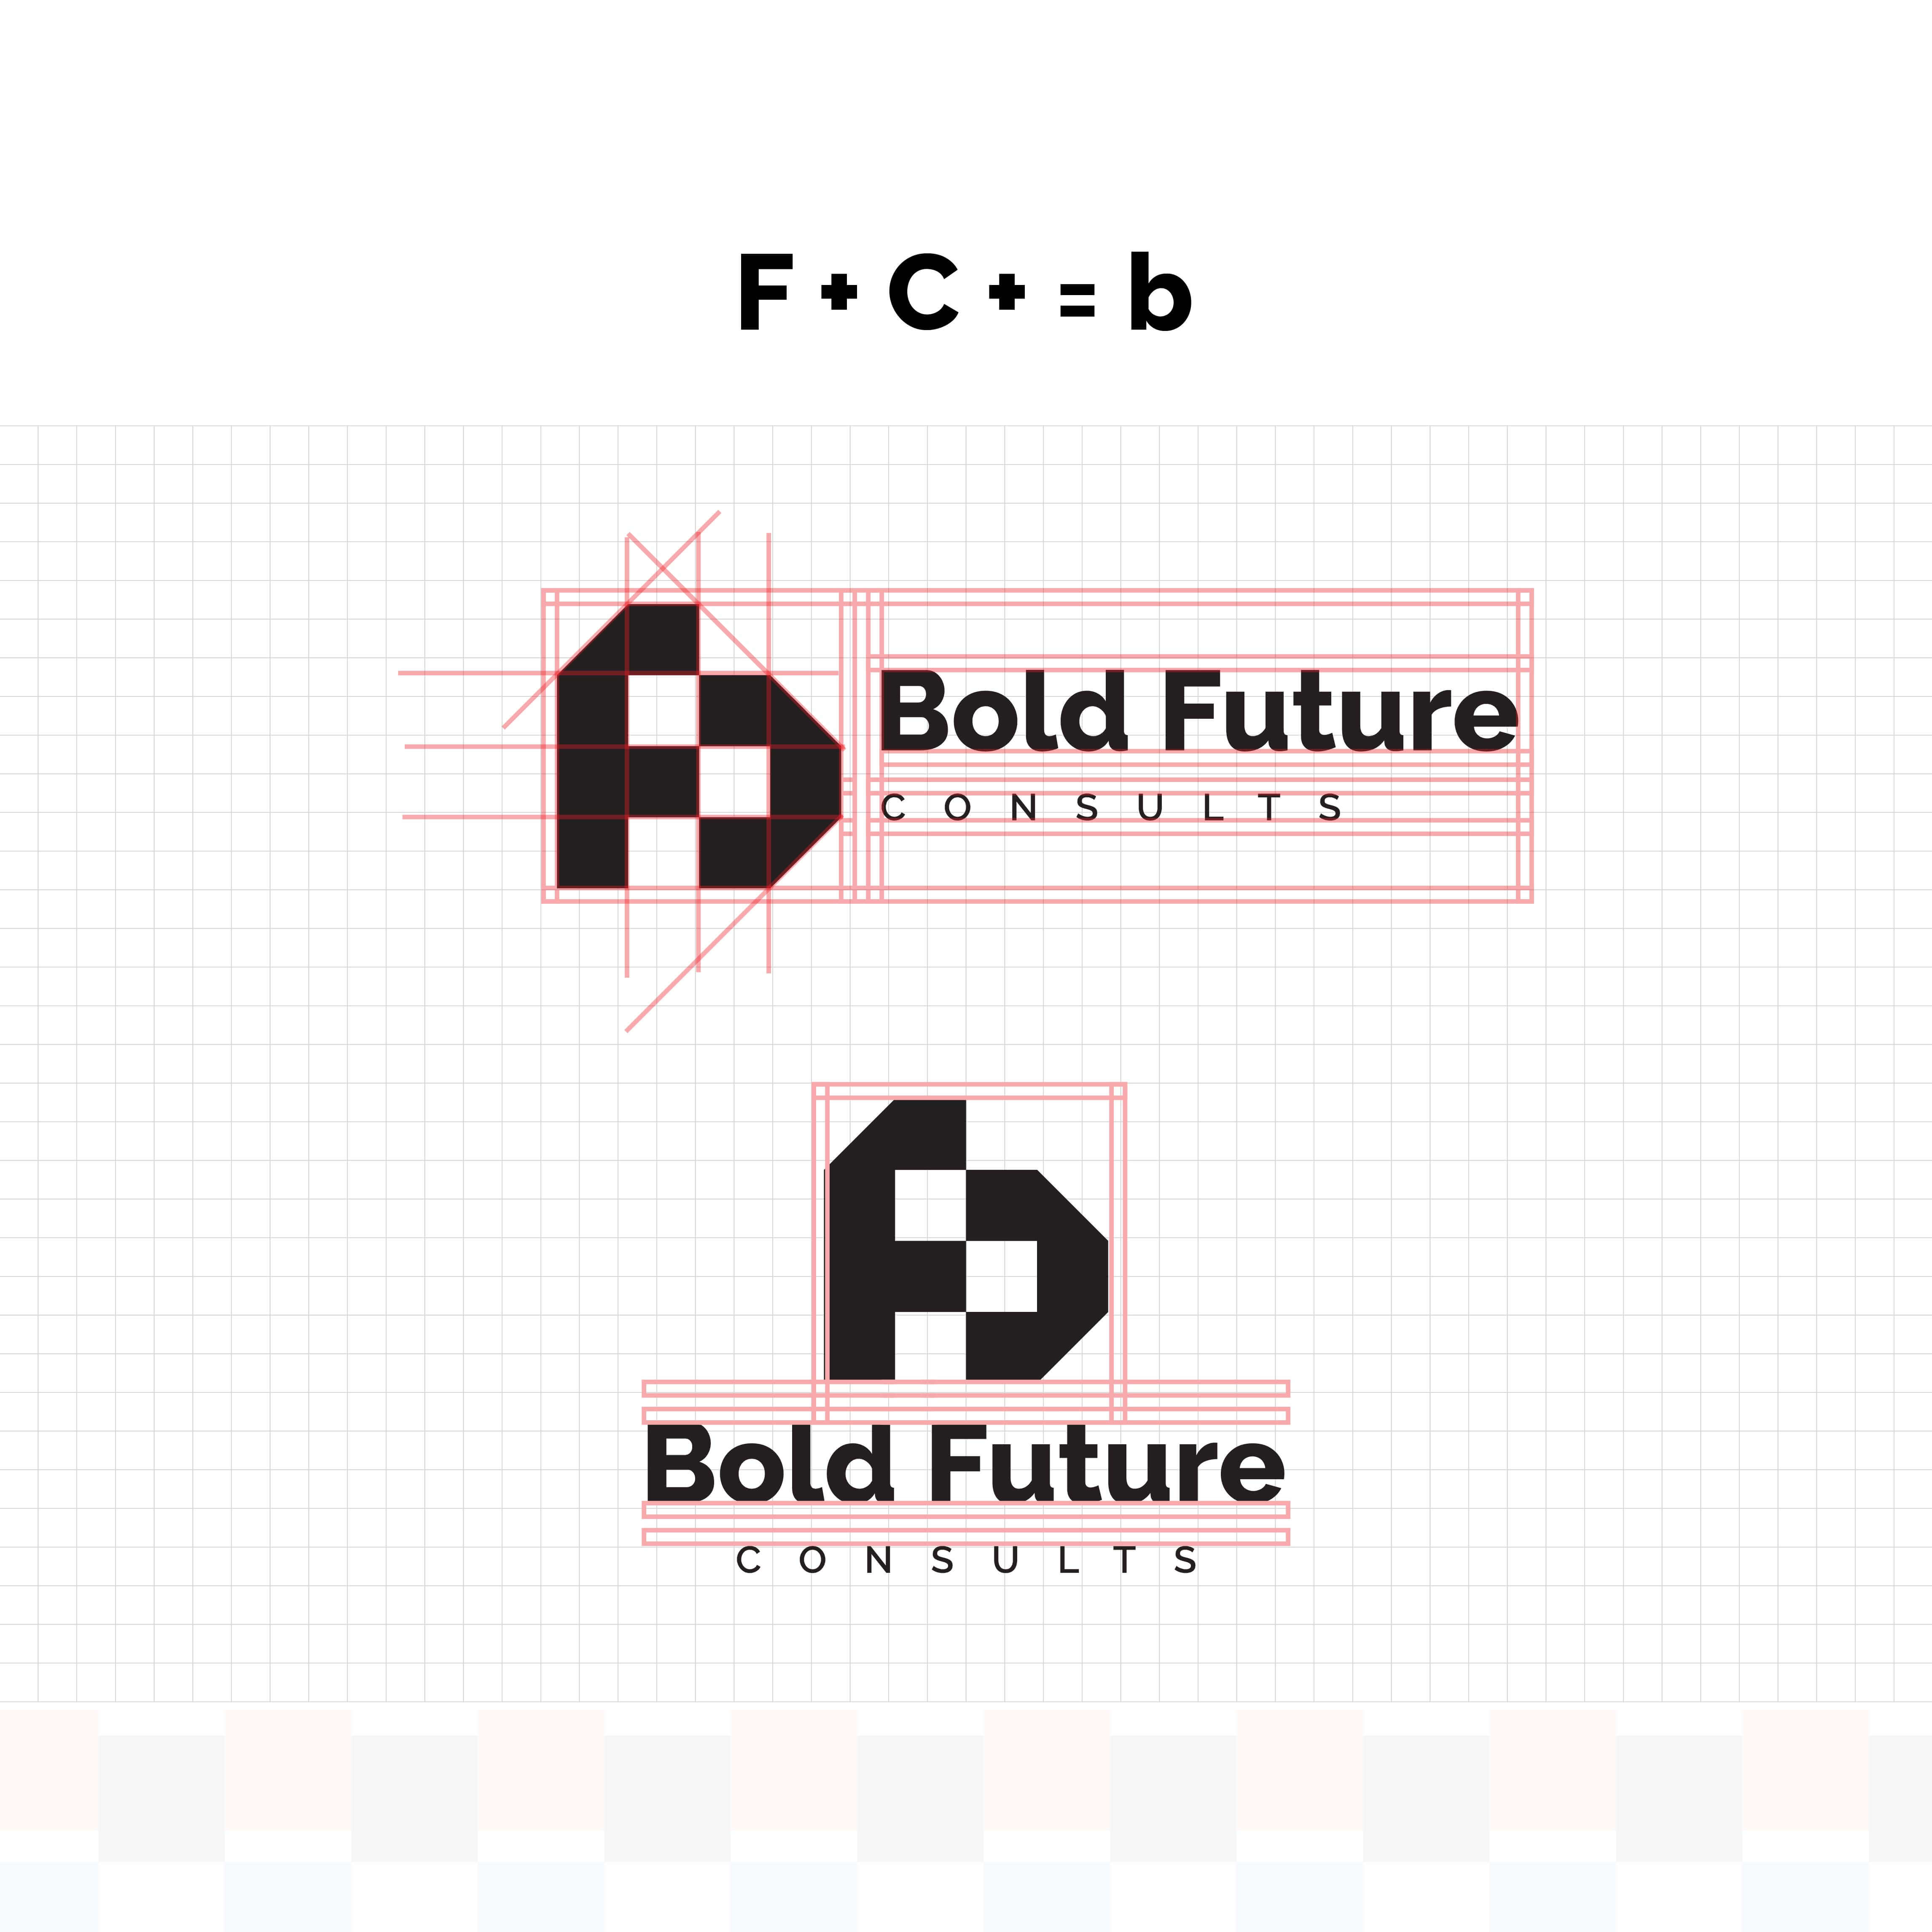 Bold Future Consults Logo Design[2 in 1 (F+C=b)] preview image.